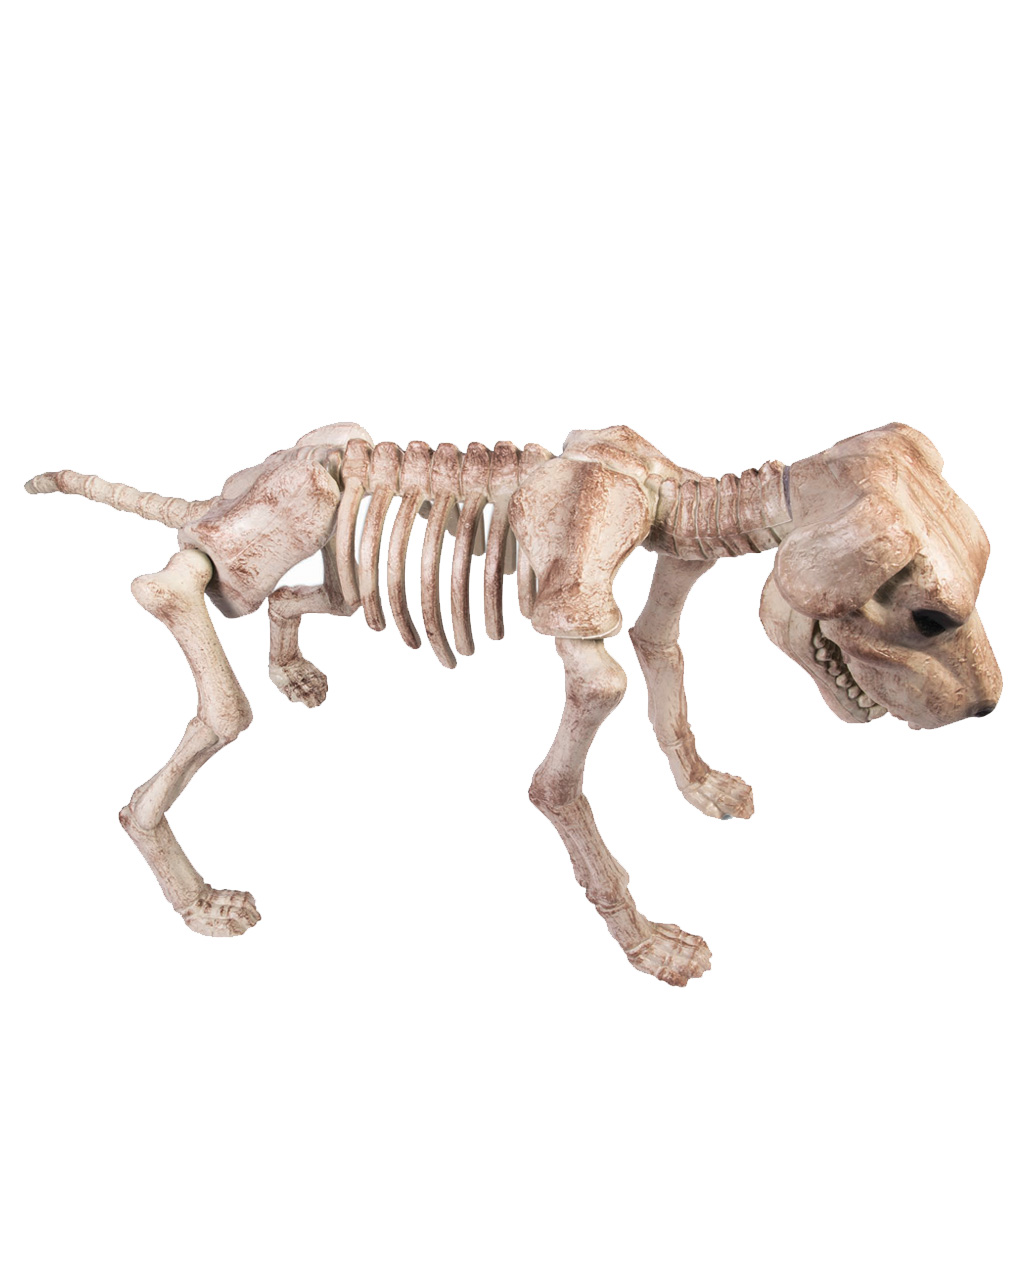 https://inst-1.cdn.shockers.de/hs_cdn/out/pictures/master/product/1/skelett-hund-gross-halloween-deko-skelet-hund-skeleton-bone-dog-decoration-39771.jpg